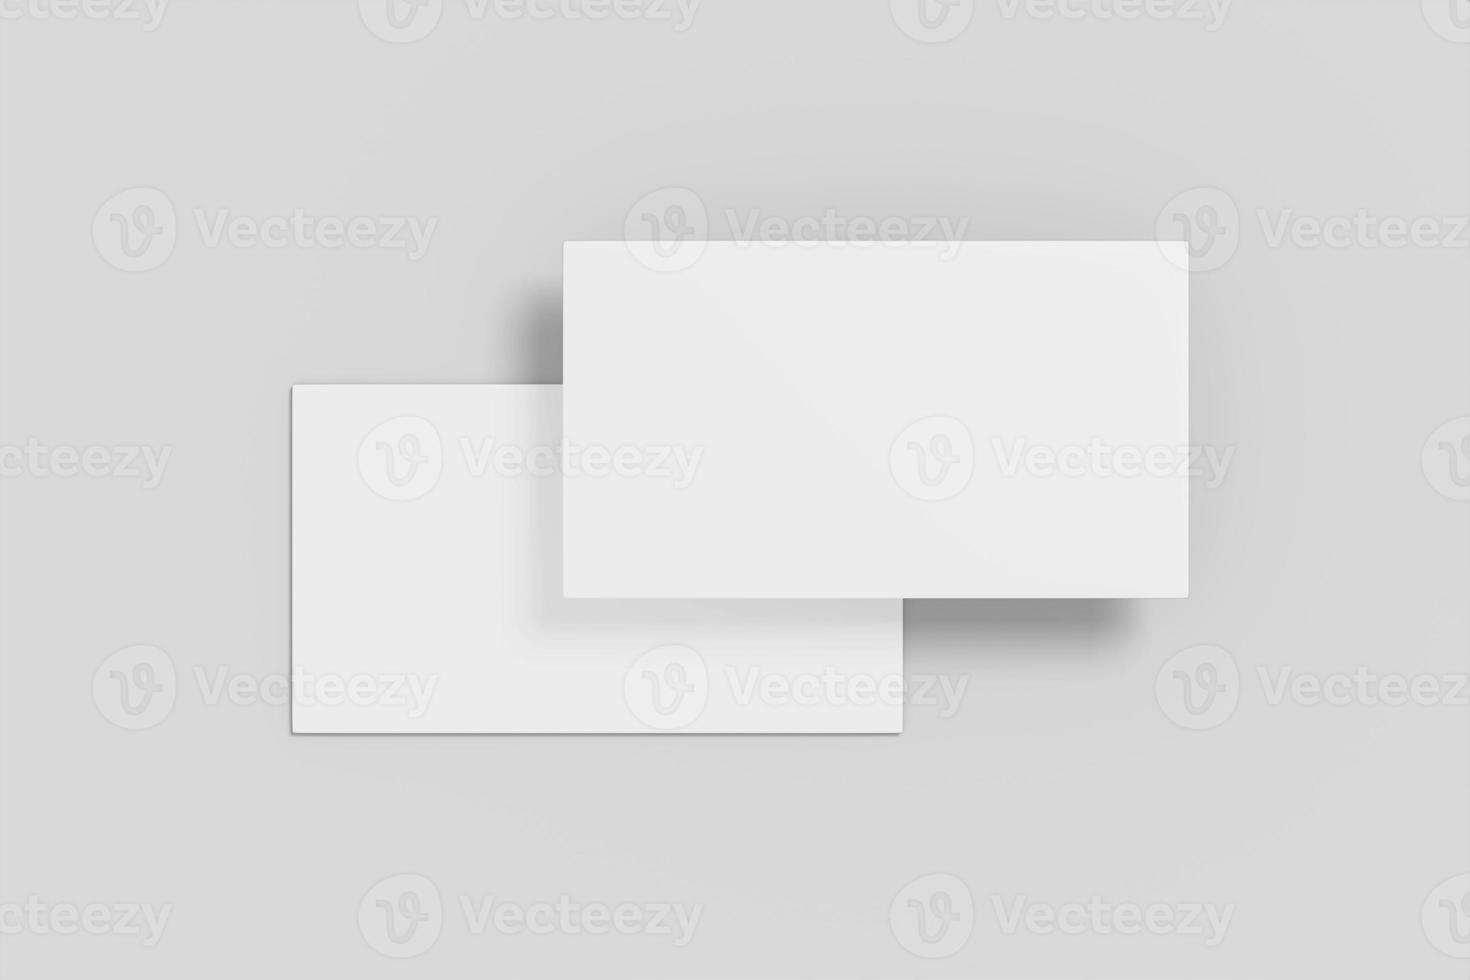 ilustración de tarjeta de visita flotante en blanco realista para maqueta. procesamiento 3d foto